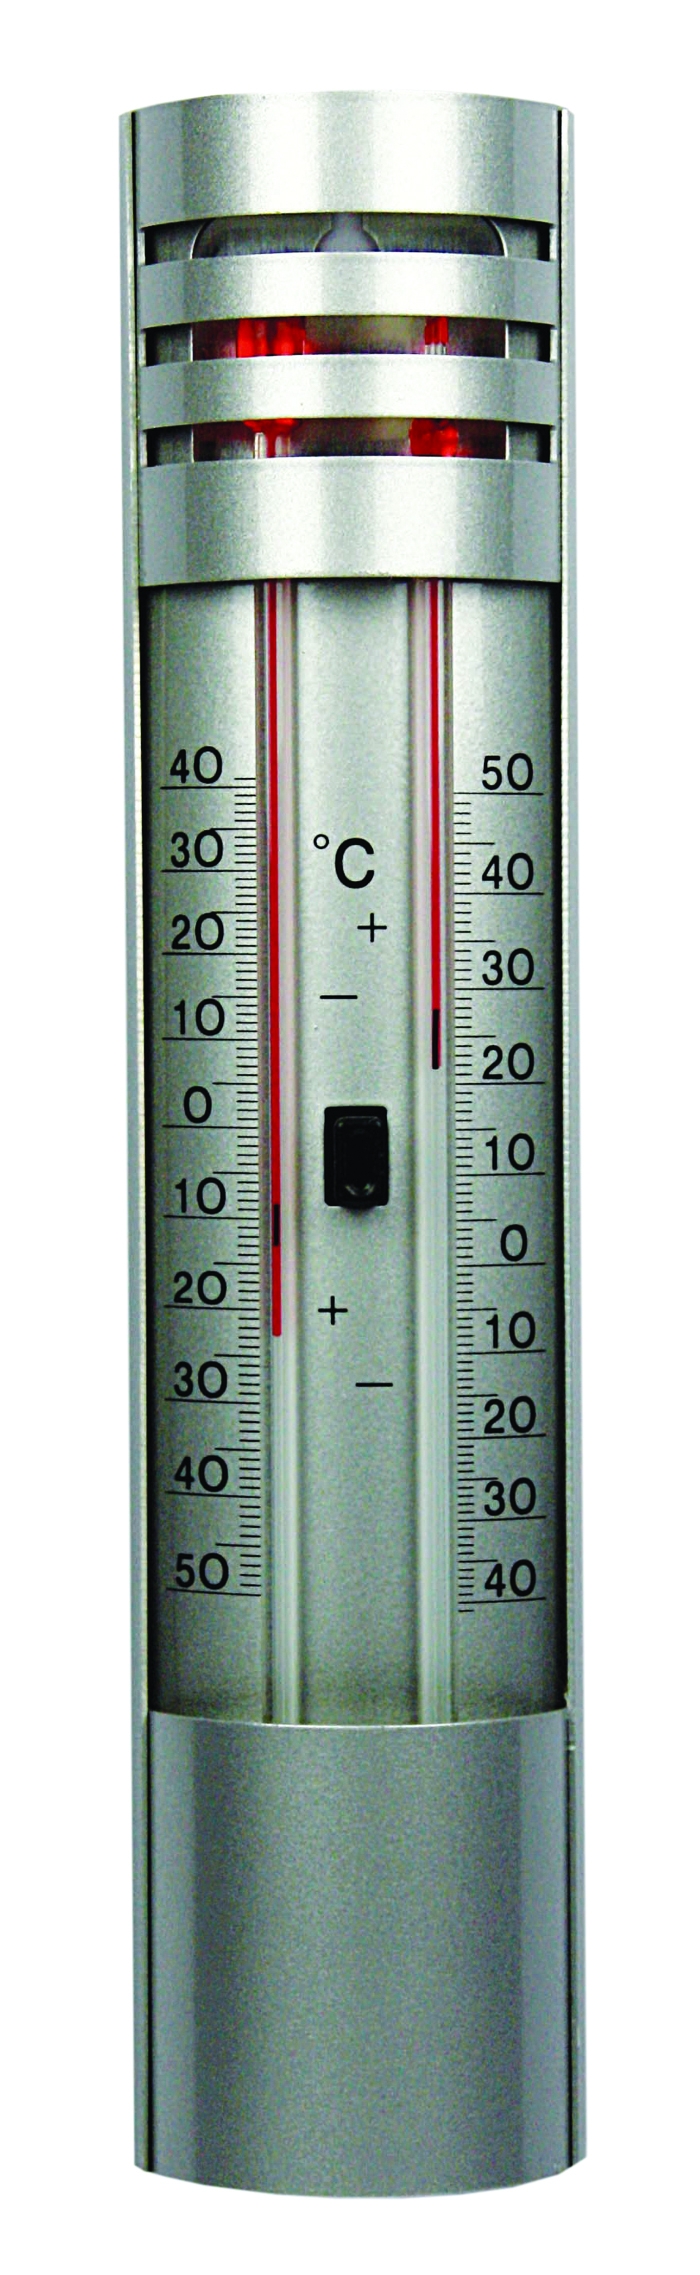 Thermomètre mini-maxi extérieur sans mercure